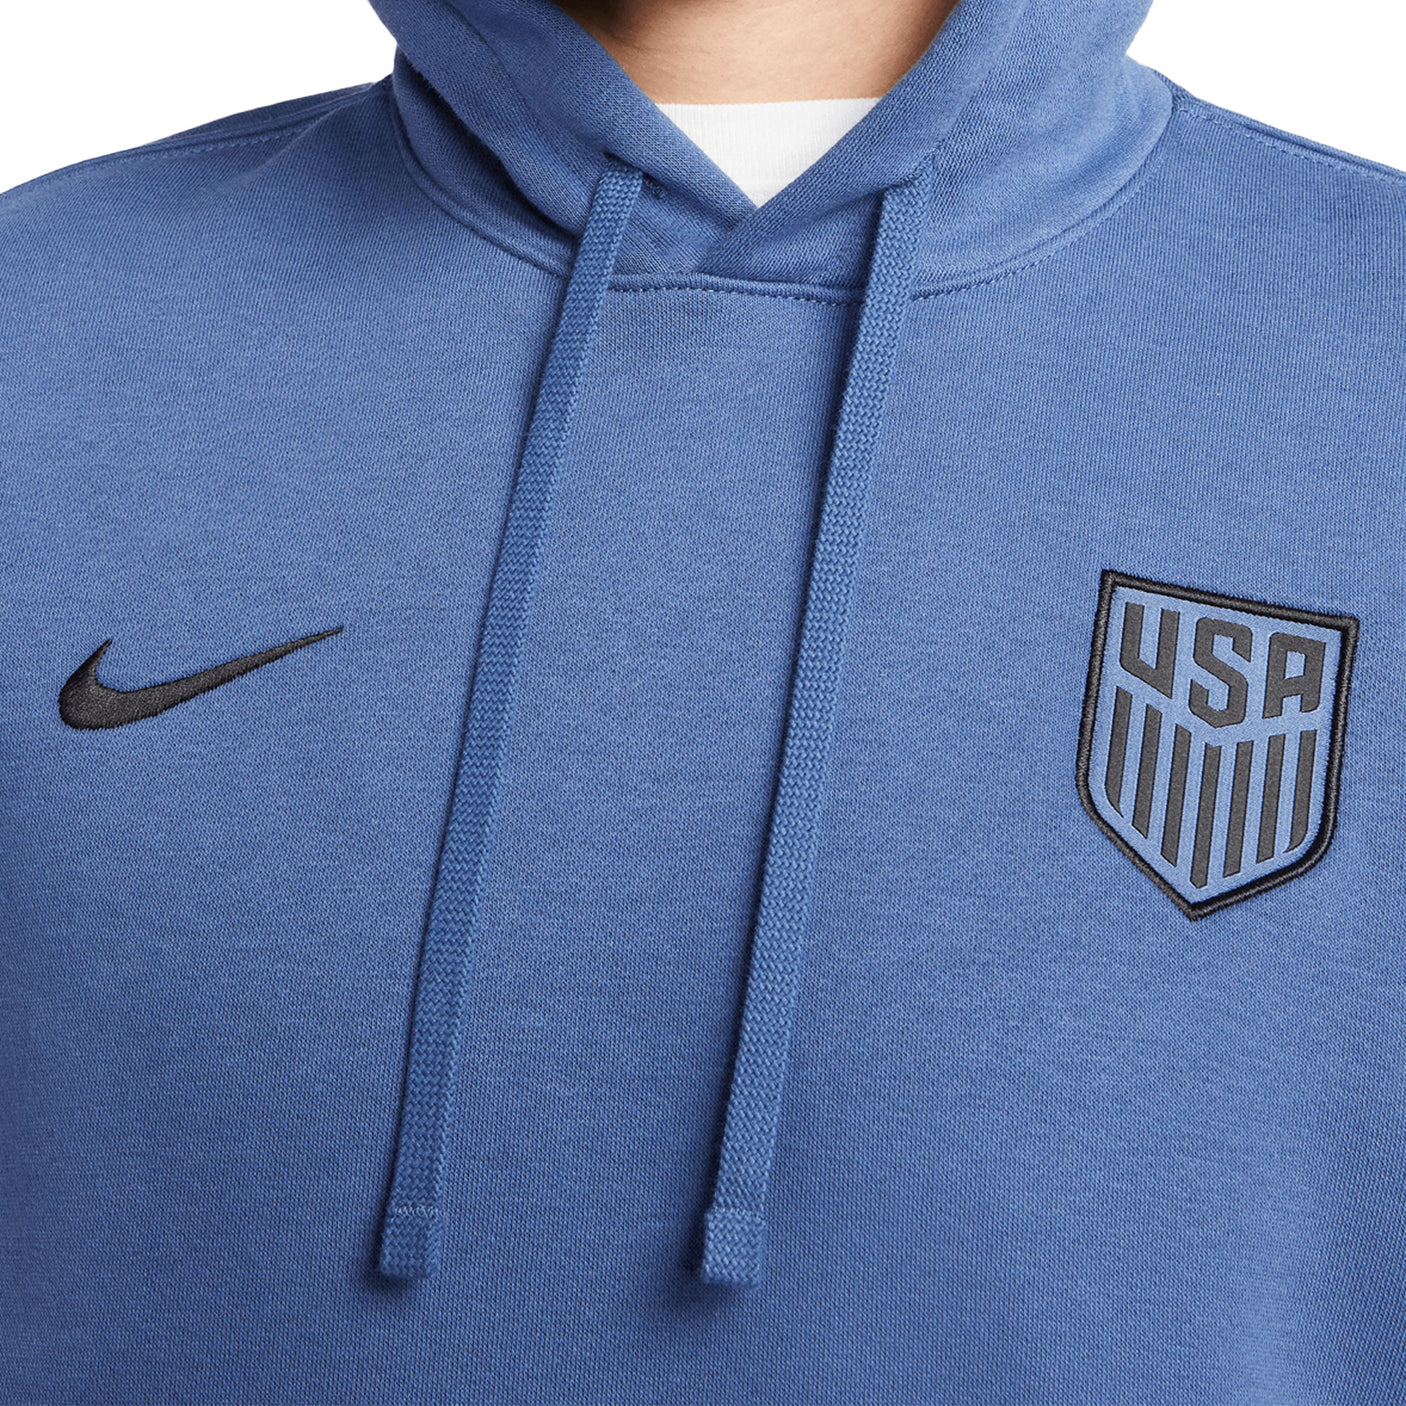 Nike Men's USA Fleece Pullover Hoodie Navy/Black Crest